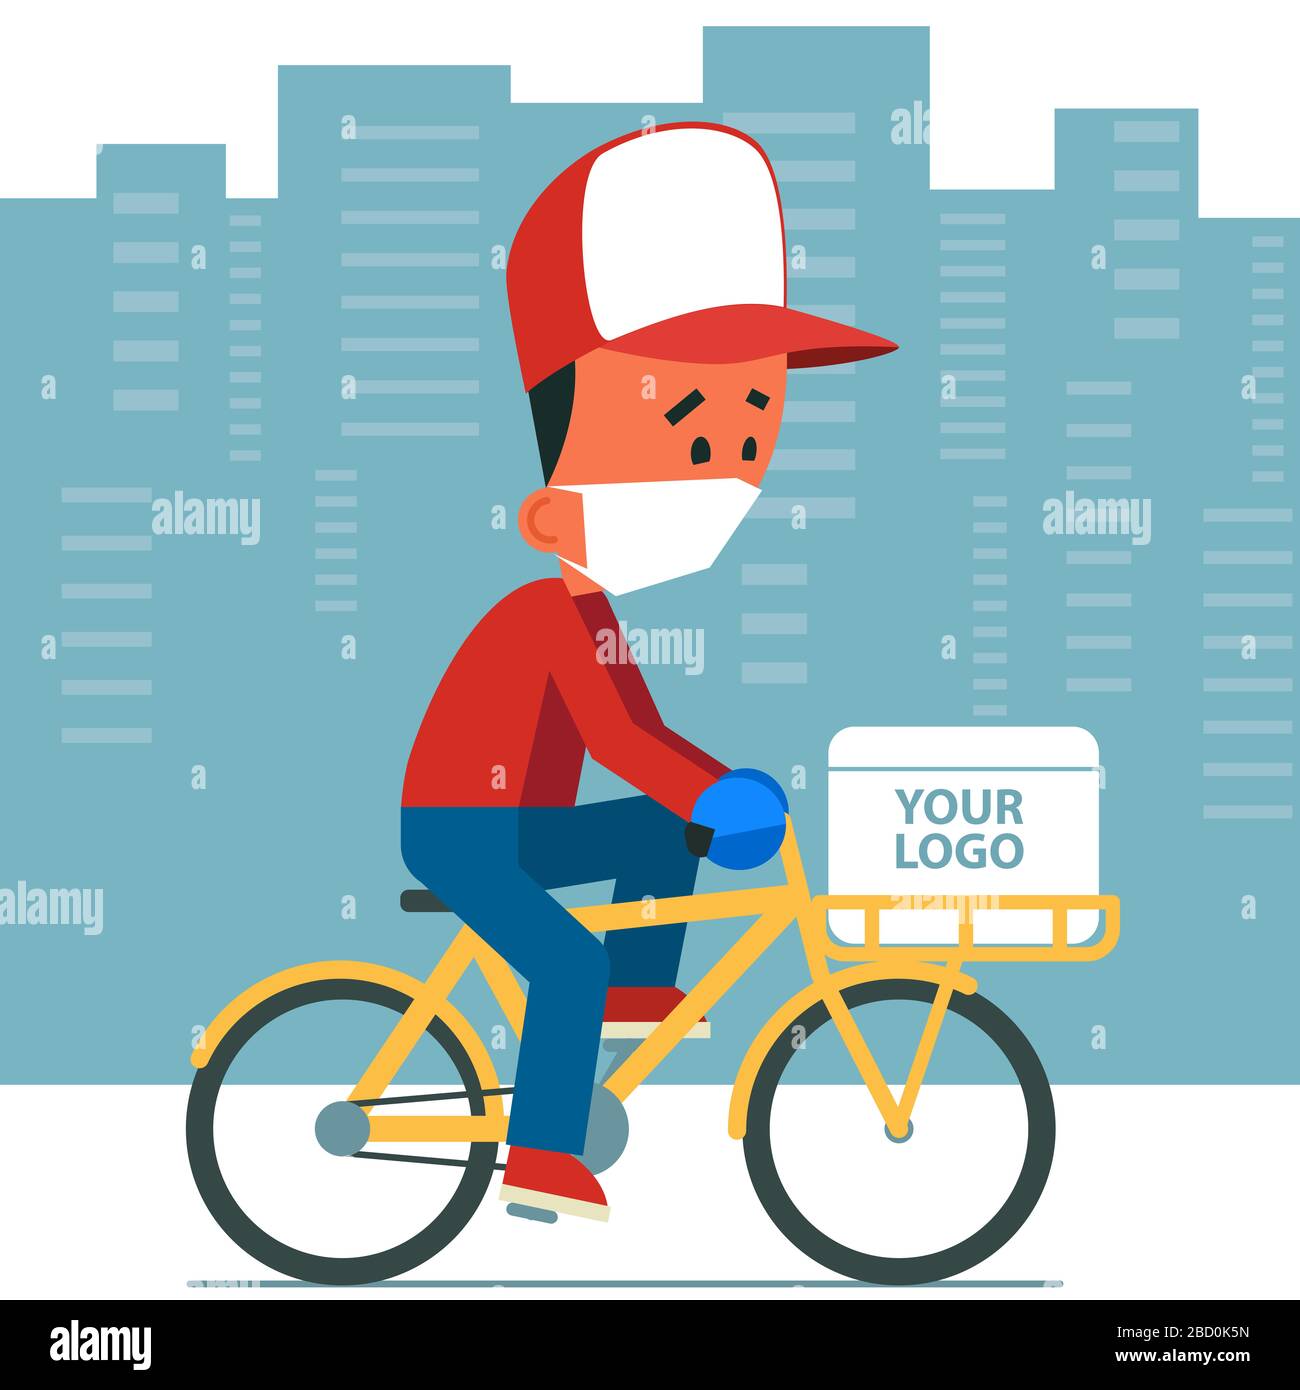 Servicio de entrega segura sin contacto. Hombre joven de dibujos animados con máscara protectora y guantes en bicicleta con caja de entrega en ella. Foto de stock